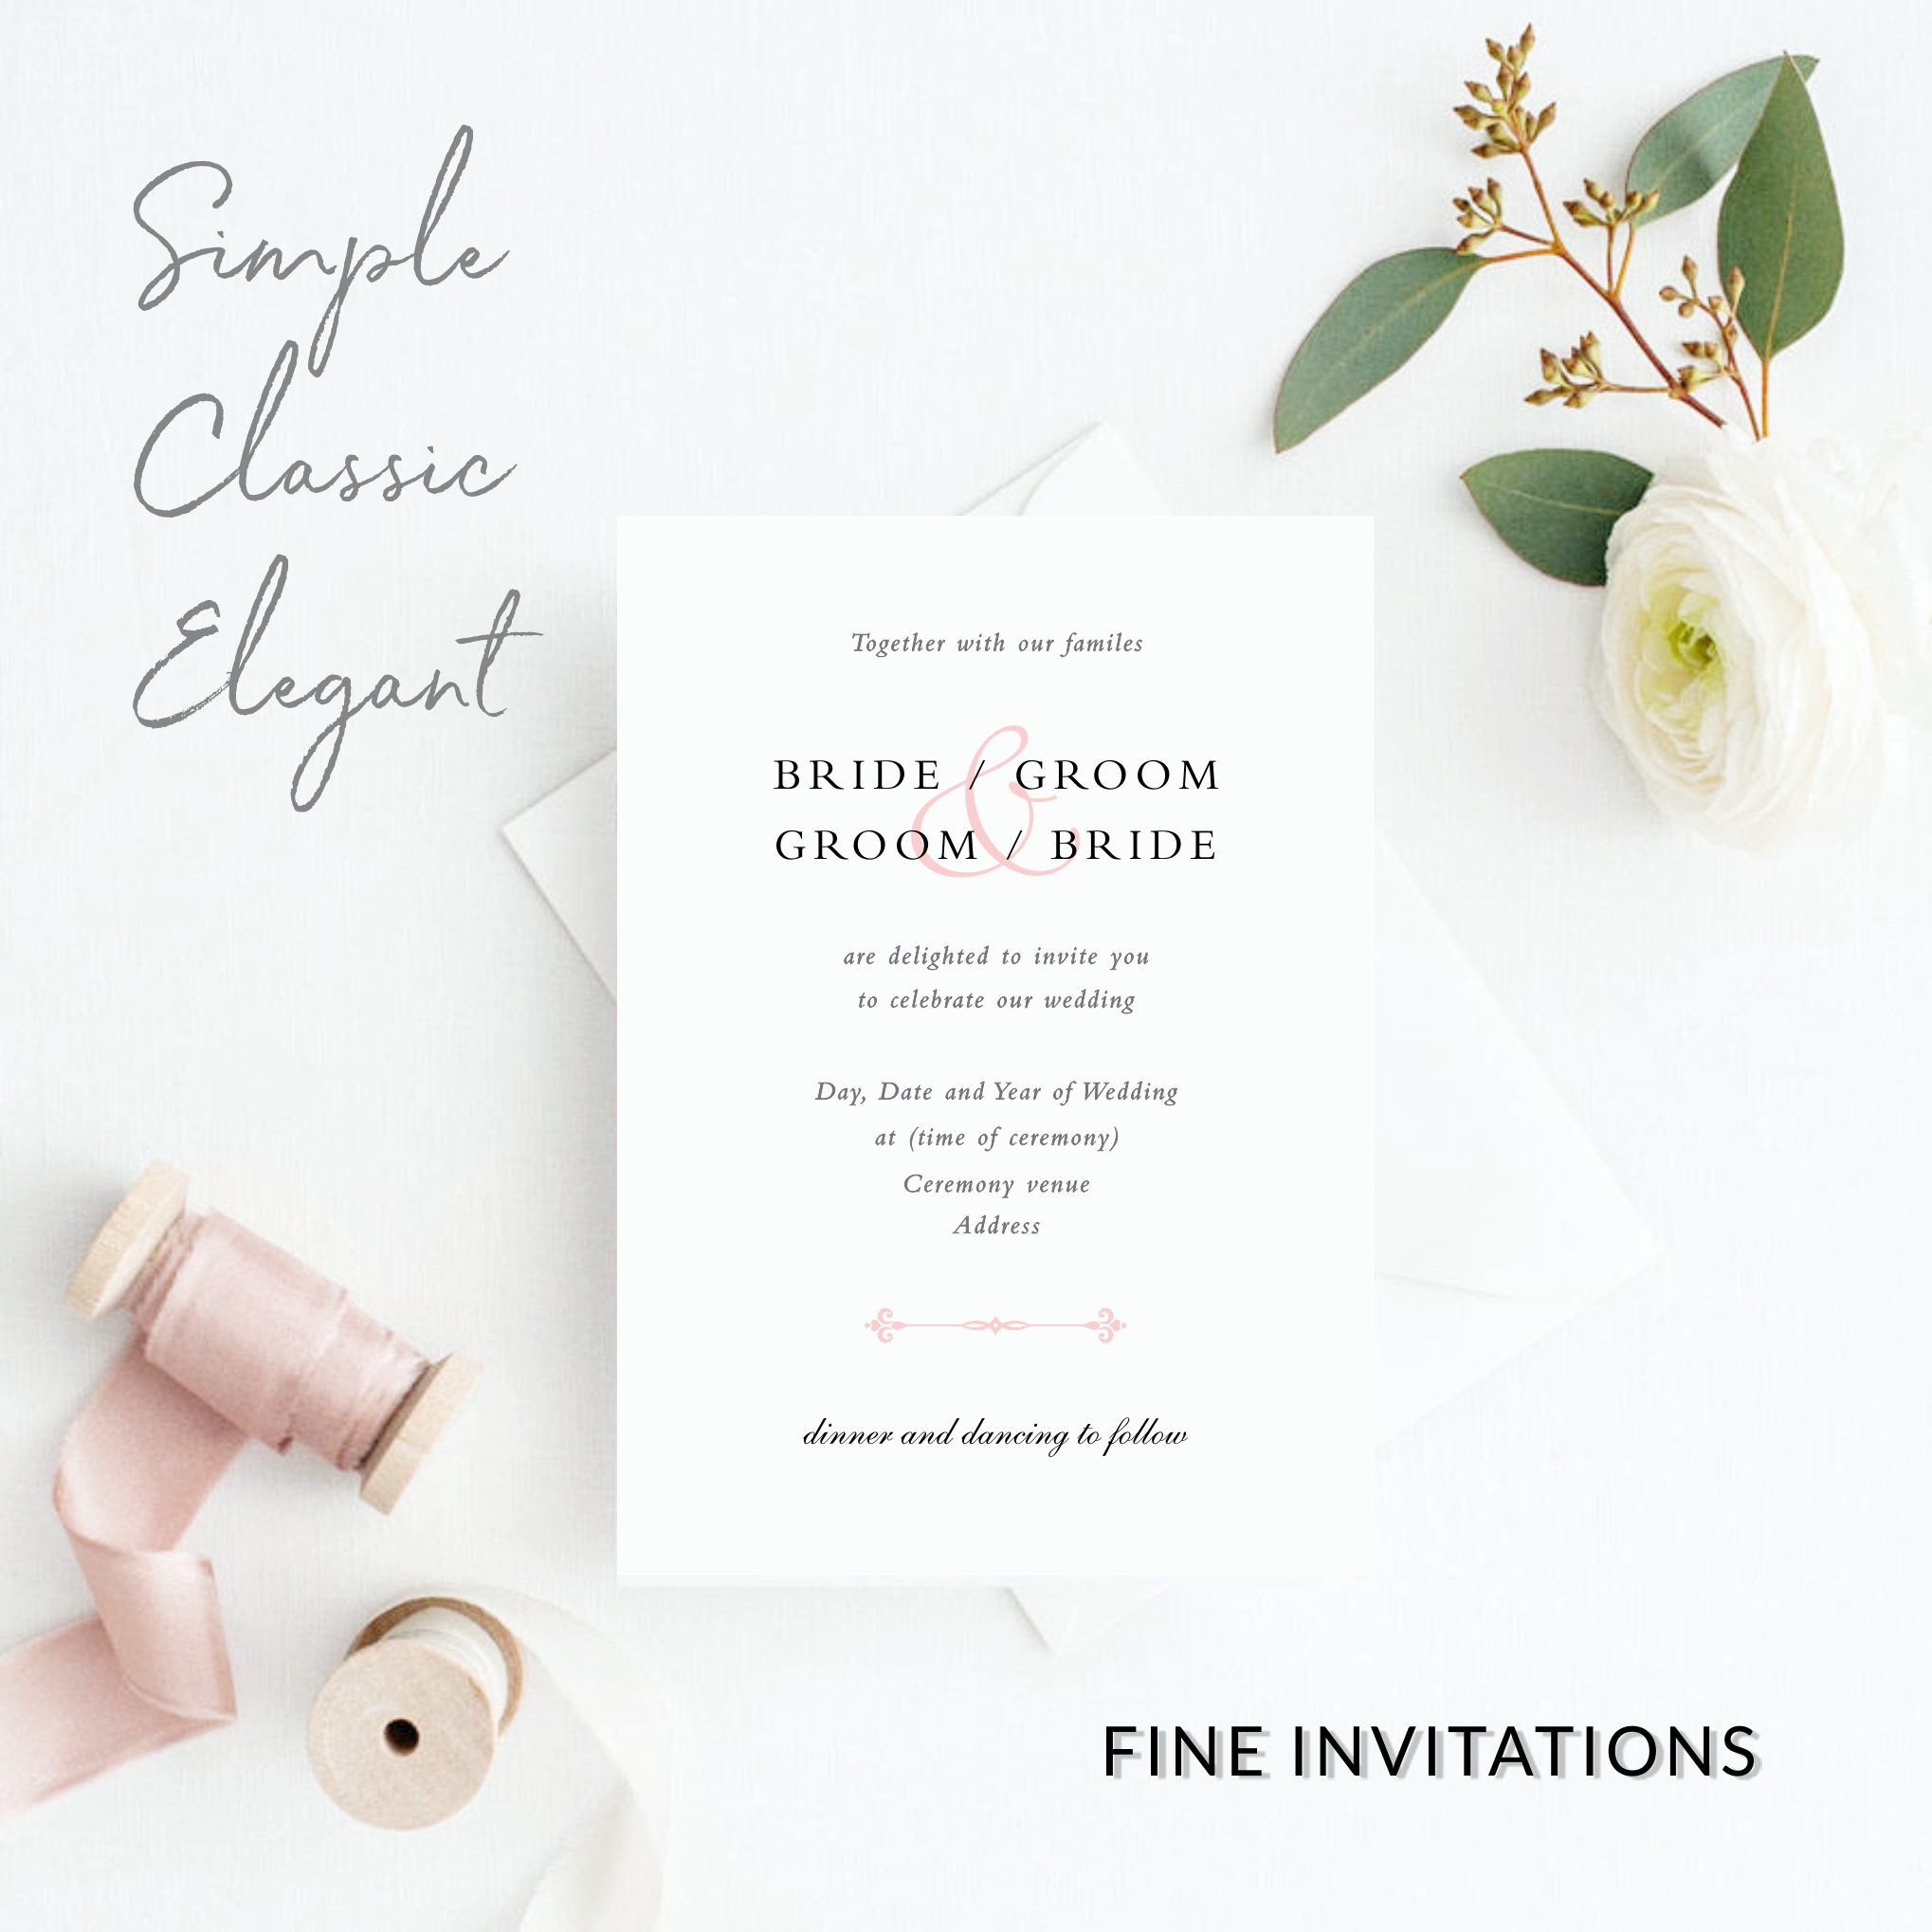 Simple Elegant Wedding Invitations Classic Elegant Wedding Invitations Fine Invitations Sydney